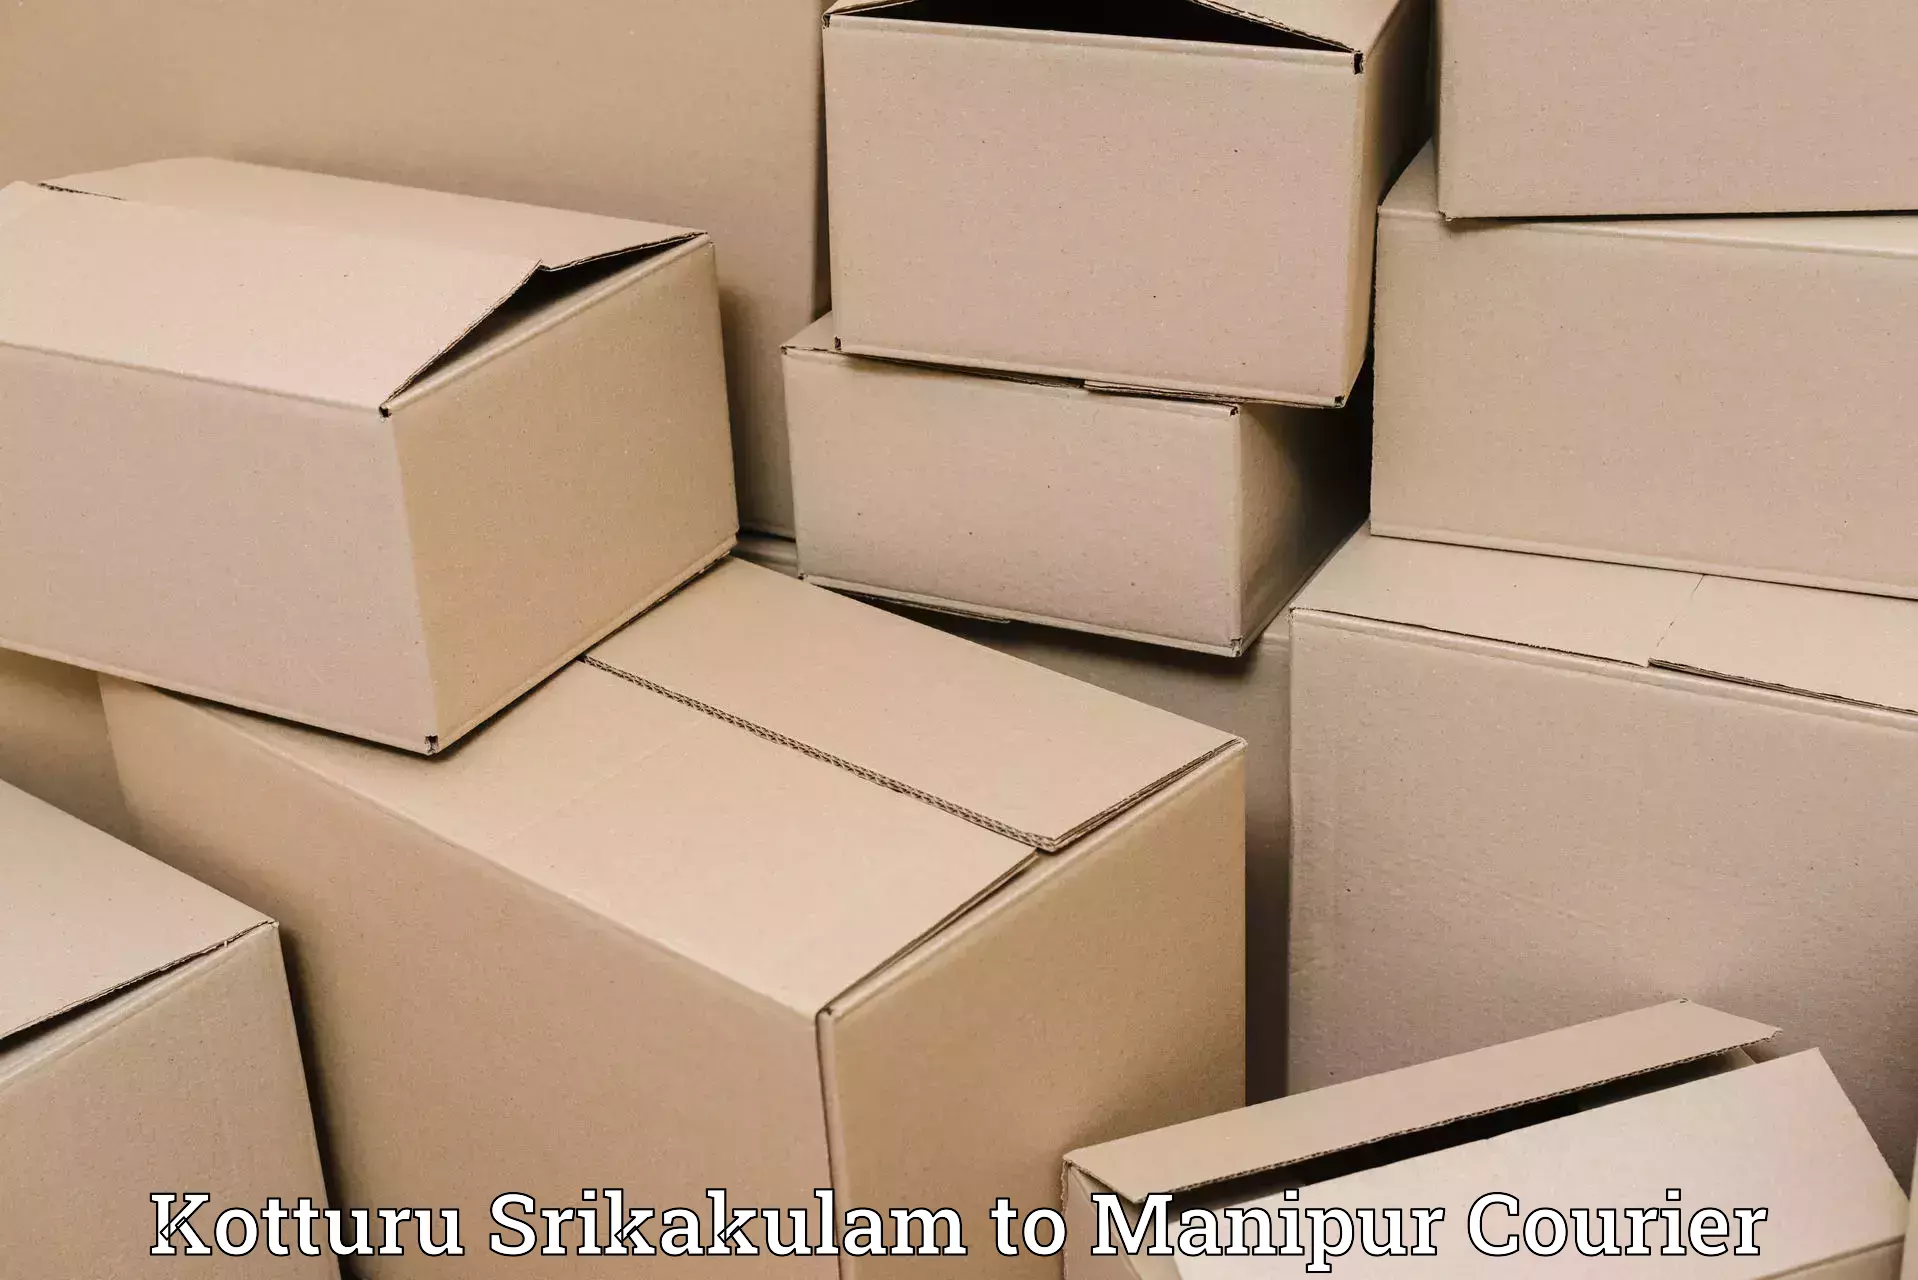 Reliable delivery network Kotturu Srikakulam to Thoubal